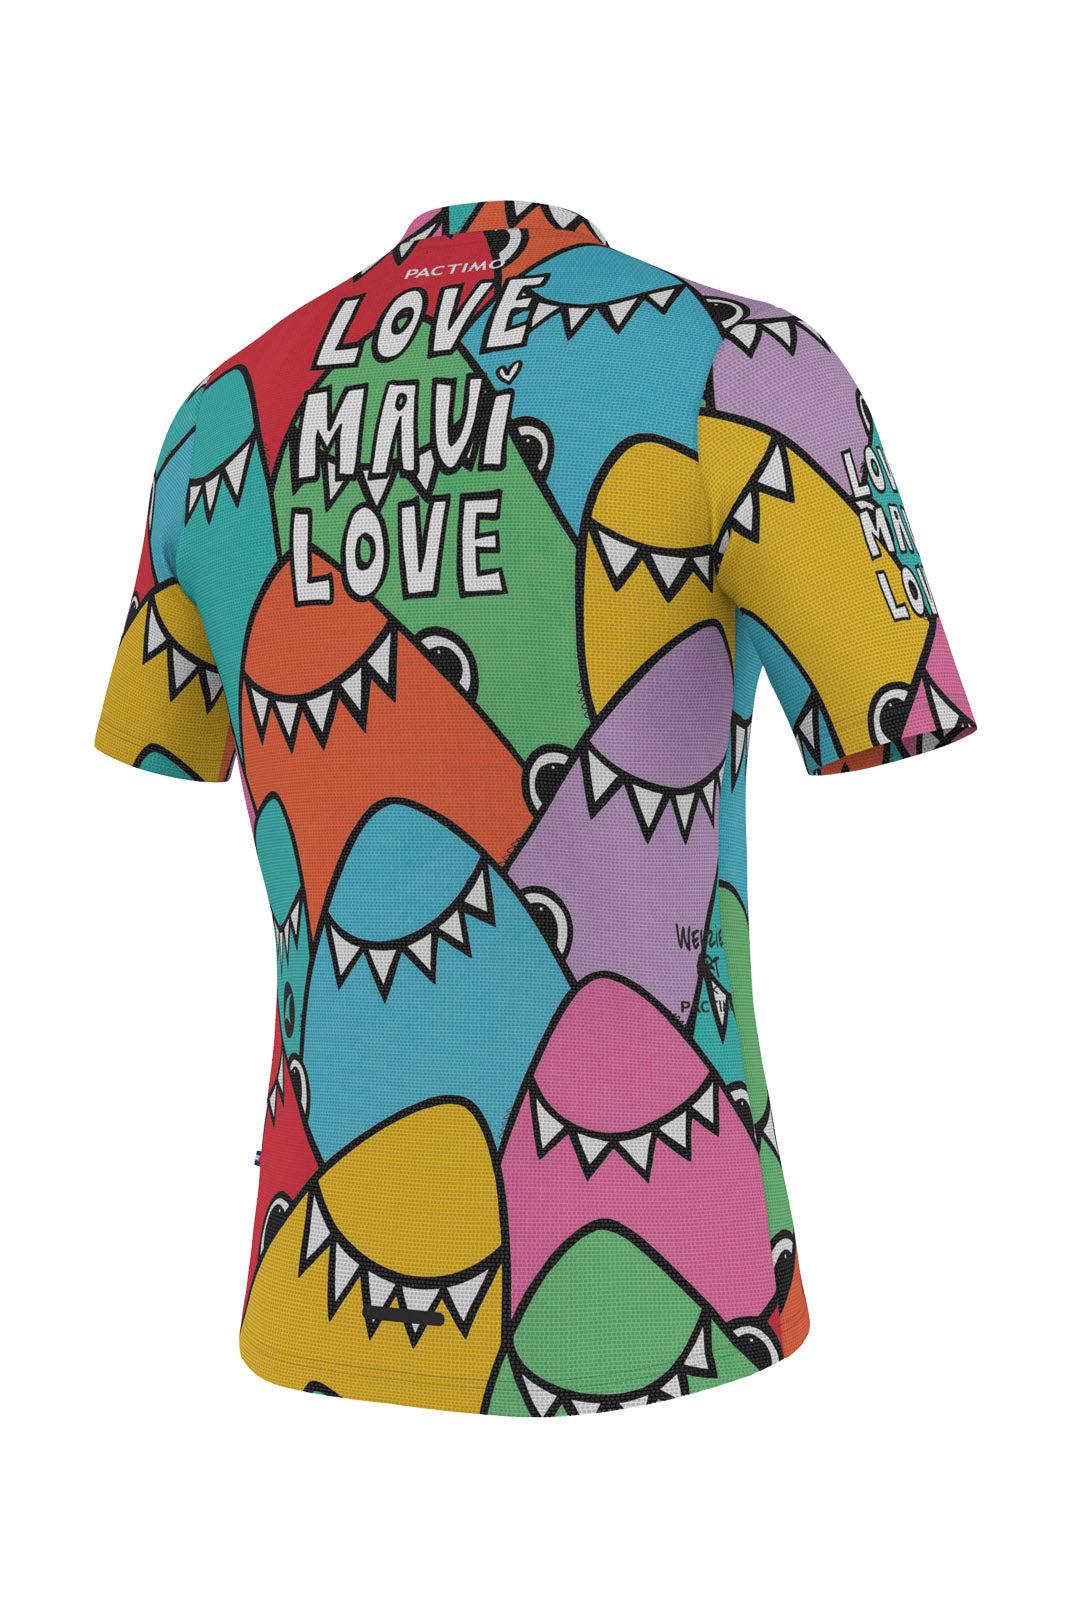 Men's Maui Relief Shirt - Rainbow Welzie Design - Back View #color_love-maui-love-rainbow